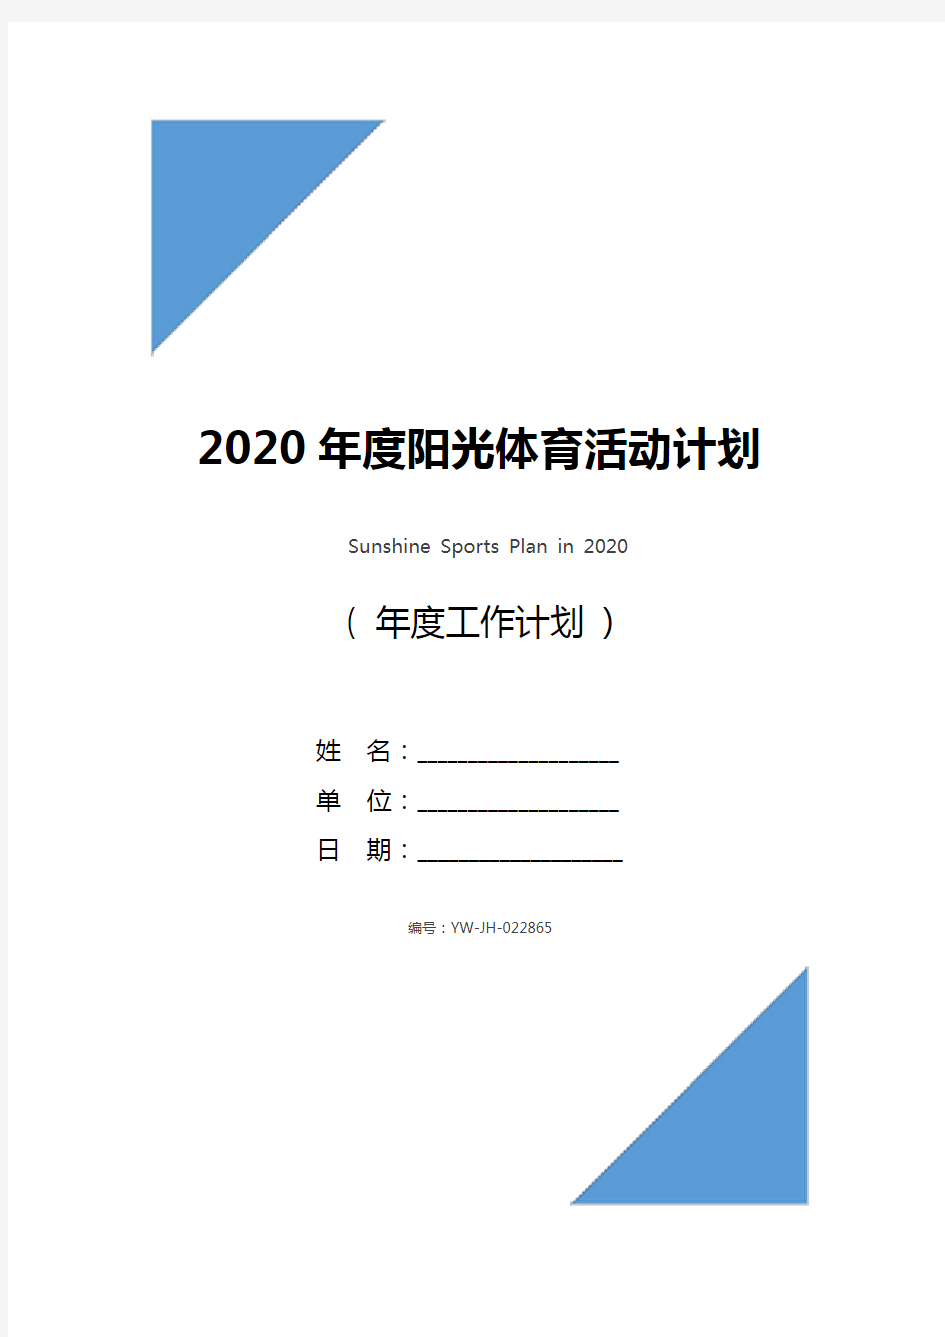 2020年度阳光体育活动计划